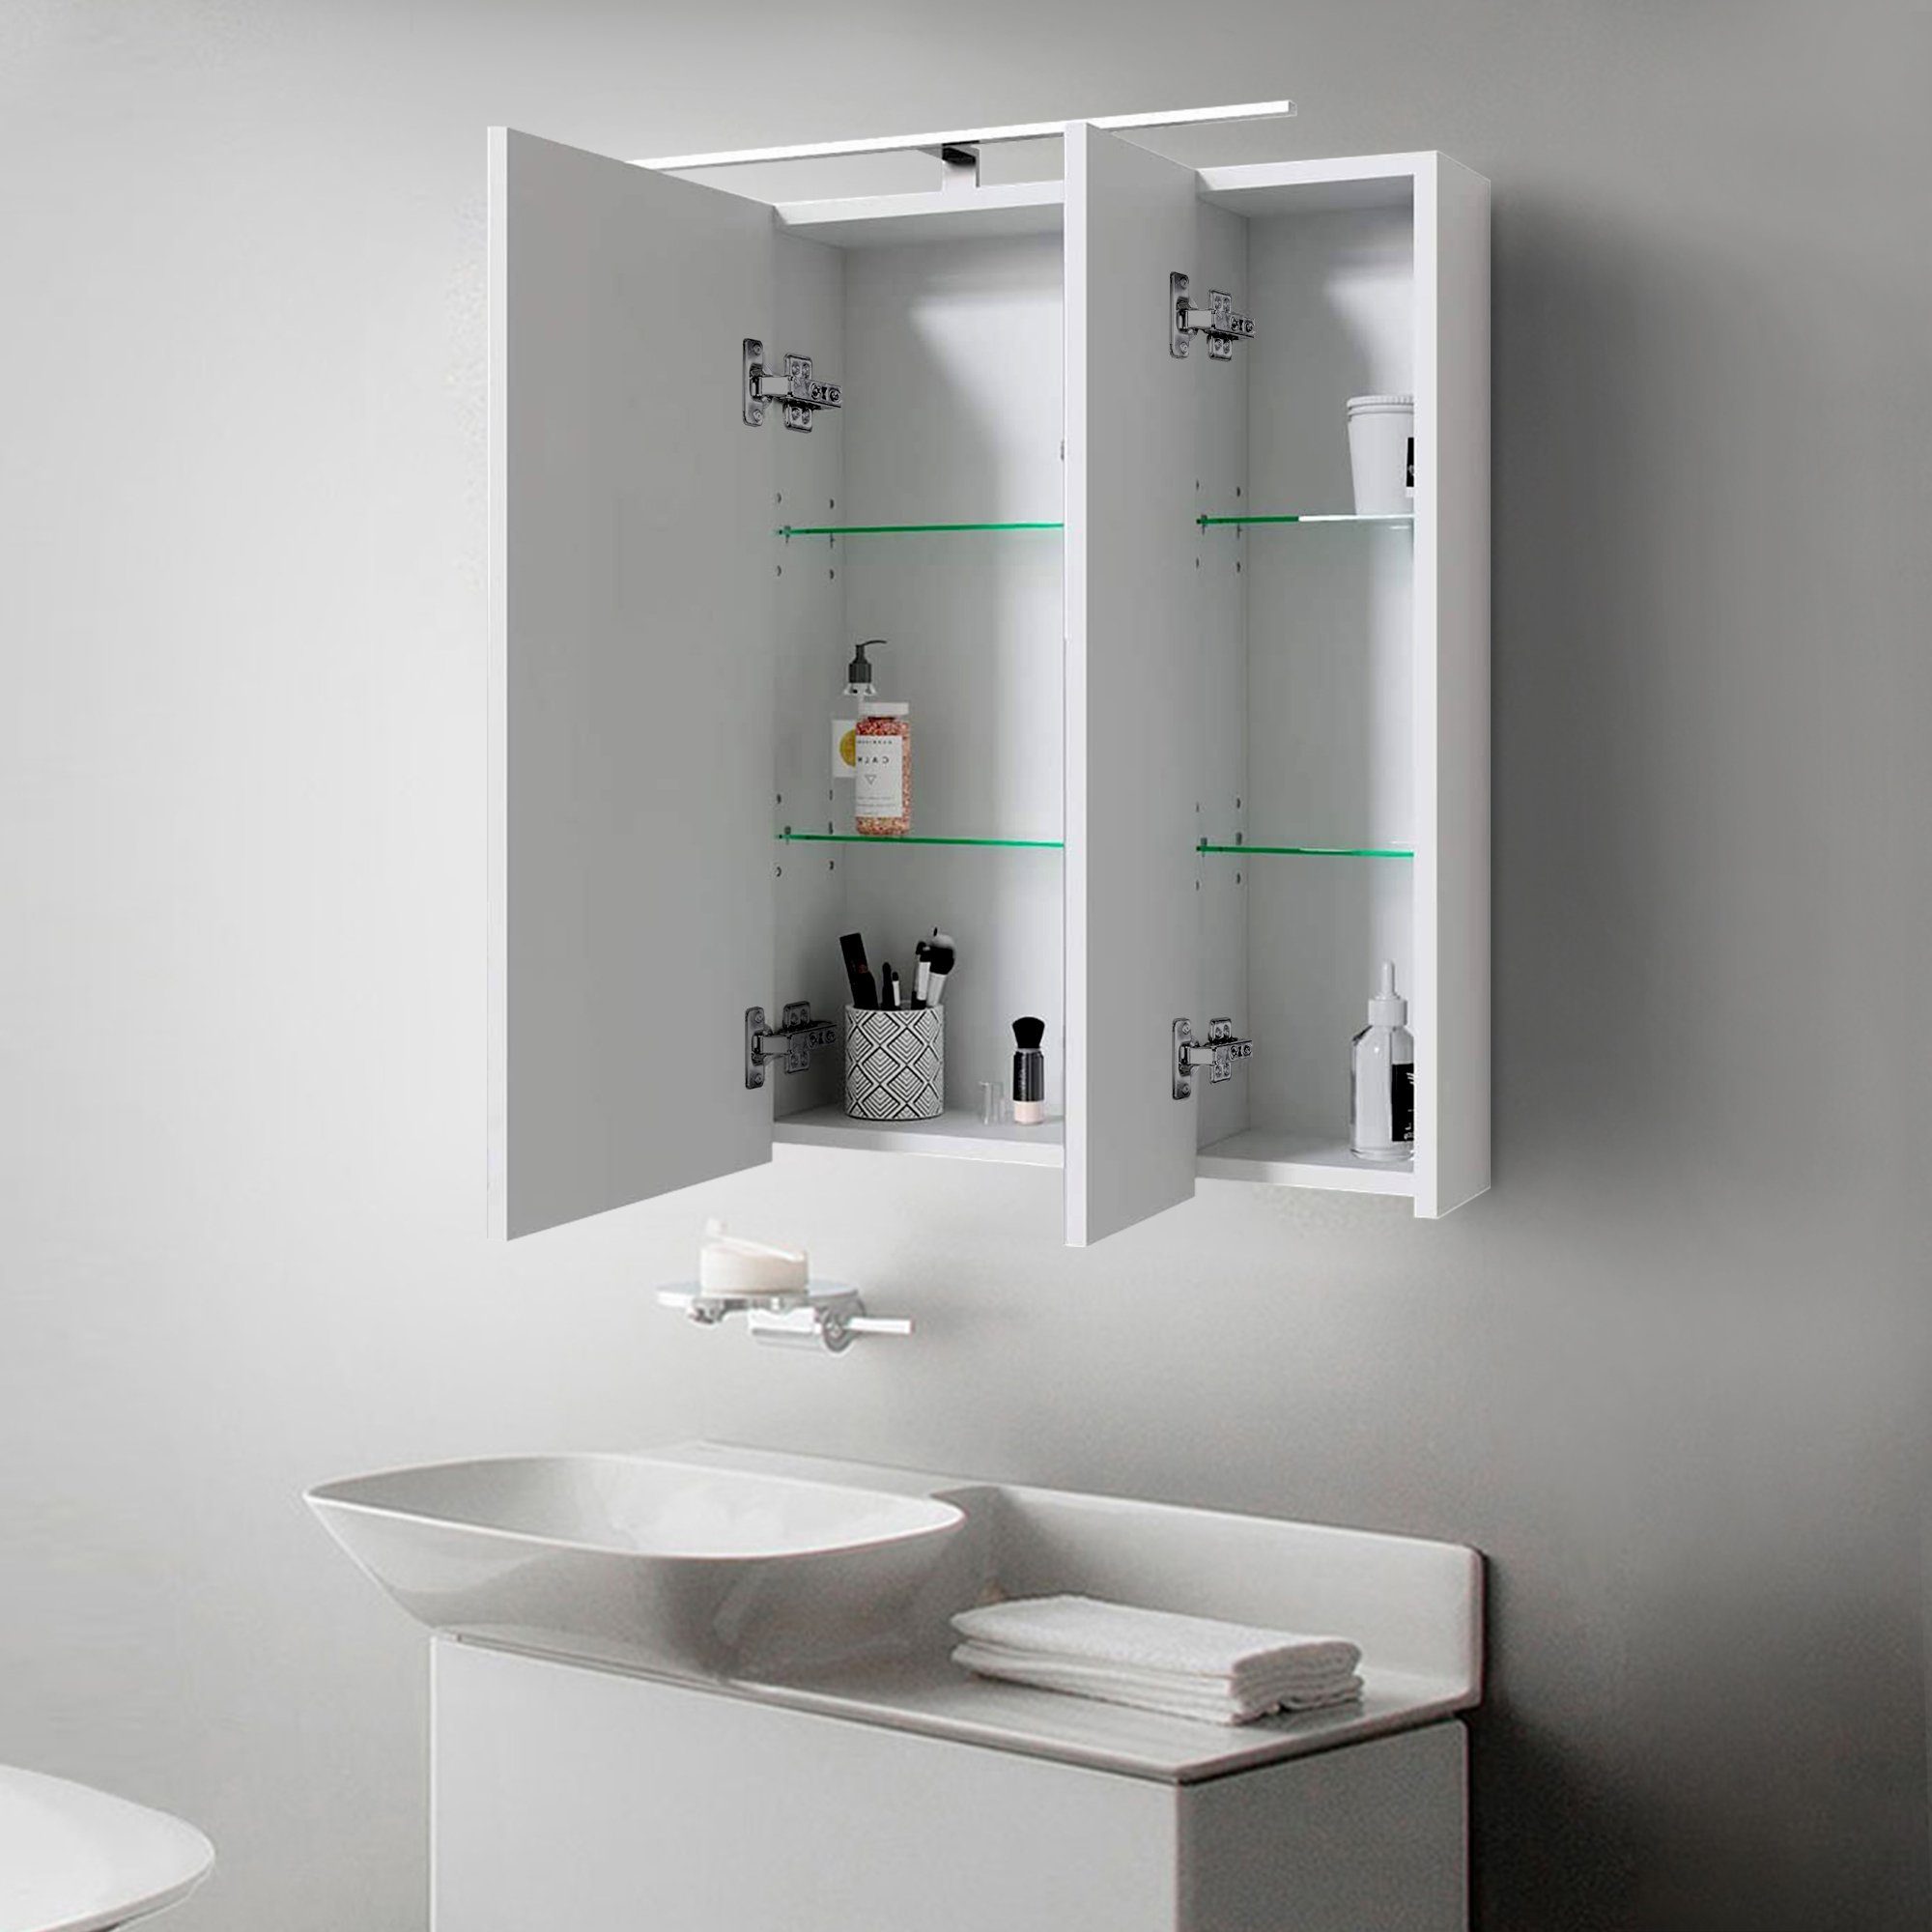 ML-DESIGN Badezimmerspiegelschrank Badschrank Badezimmerschrank Steckdose Lichtschalter 3-Türig LED Wandspiegel Badspiegel 724x72x15cm Beleuchtung Weiß